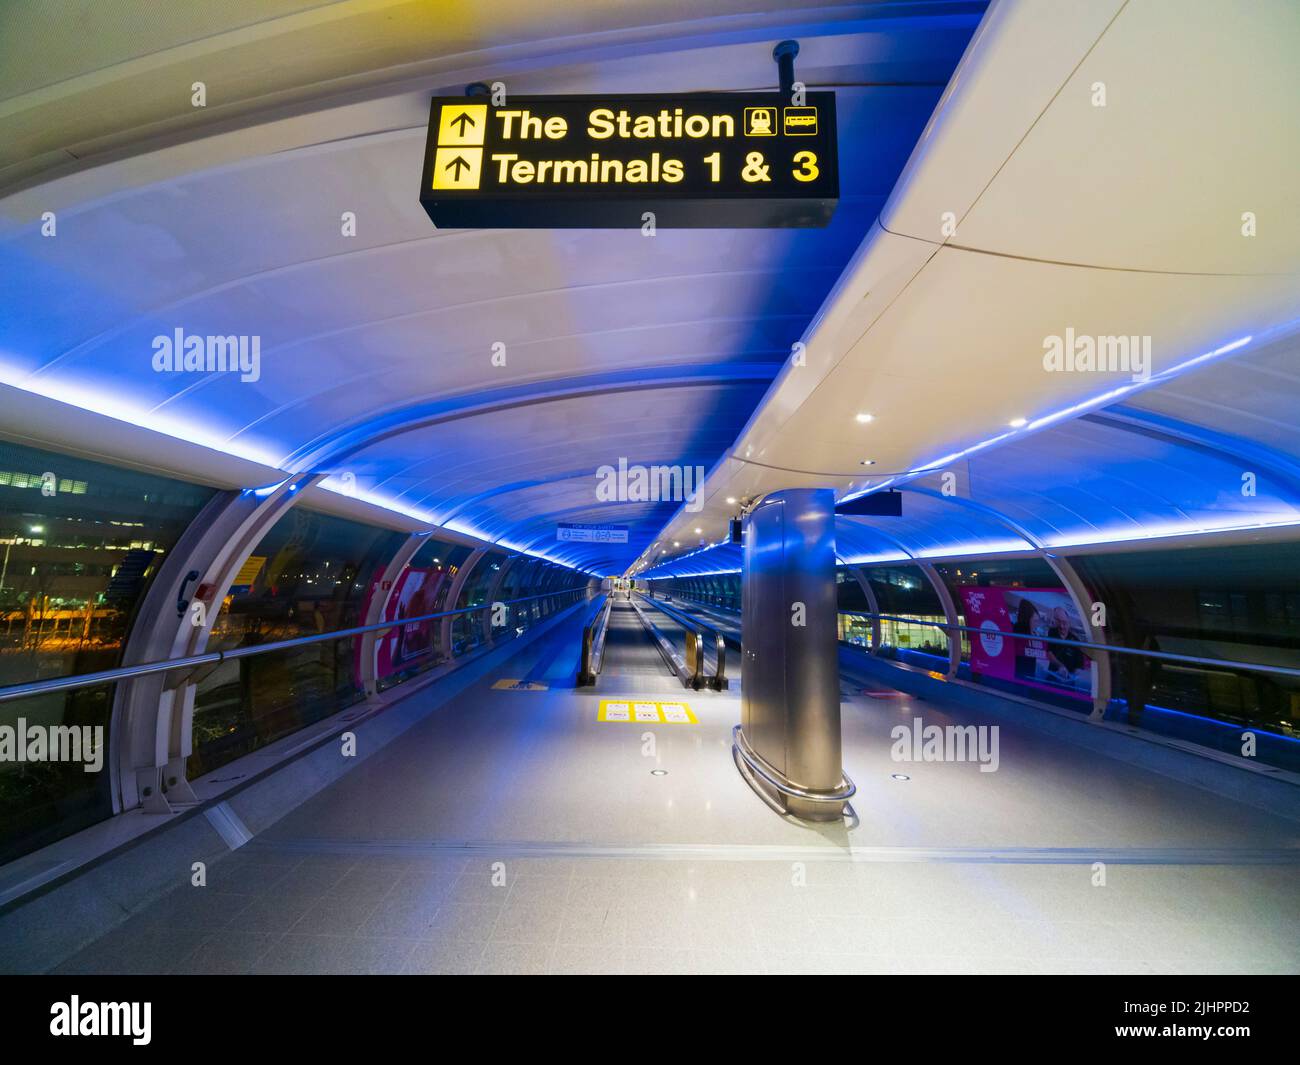 Pasarela cubierta Skyway del aeropuerto de Manchester que conecta la estación de tren, el hotel Radisson Blu y las terminales 1 y 2. Foto de stock